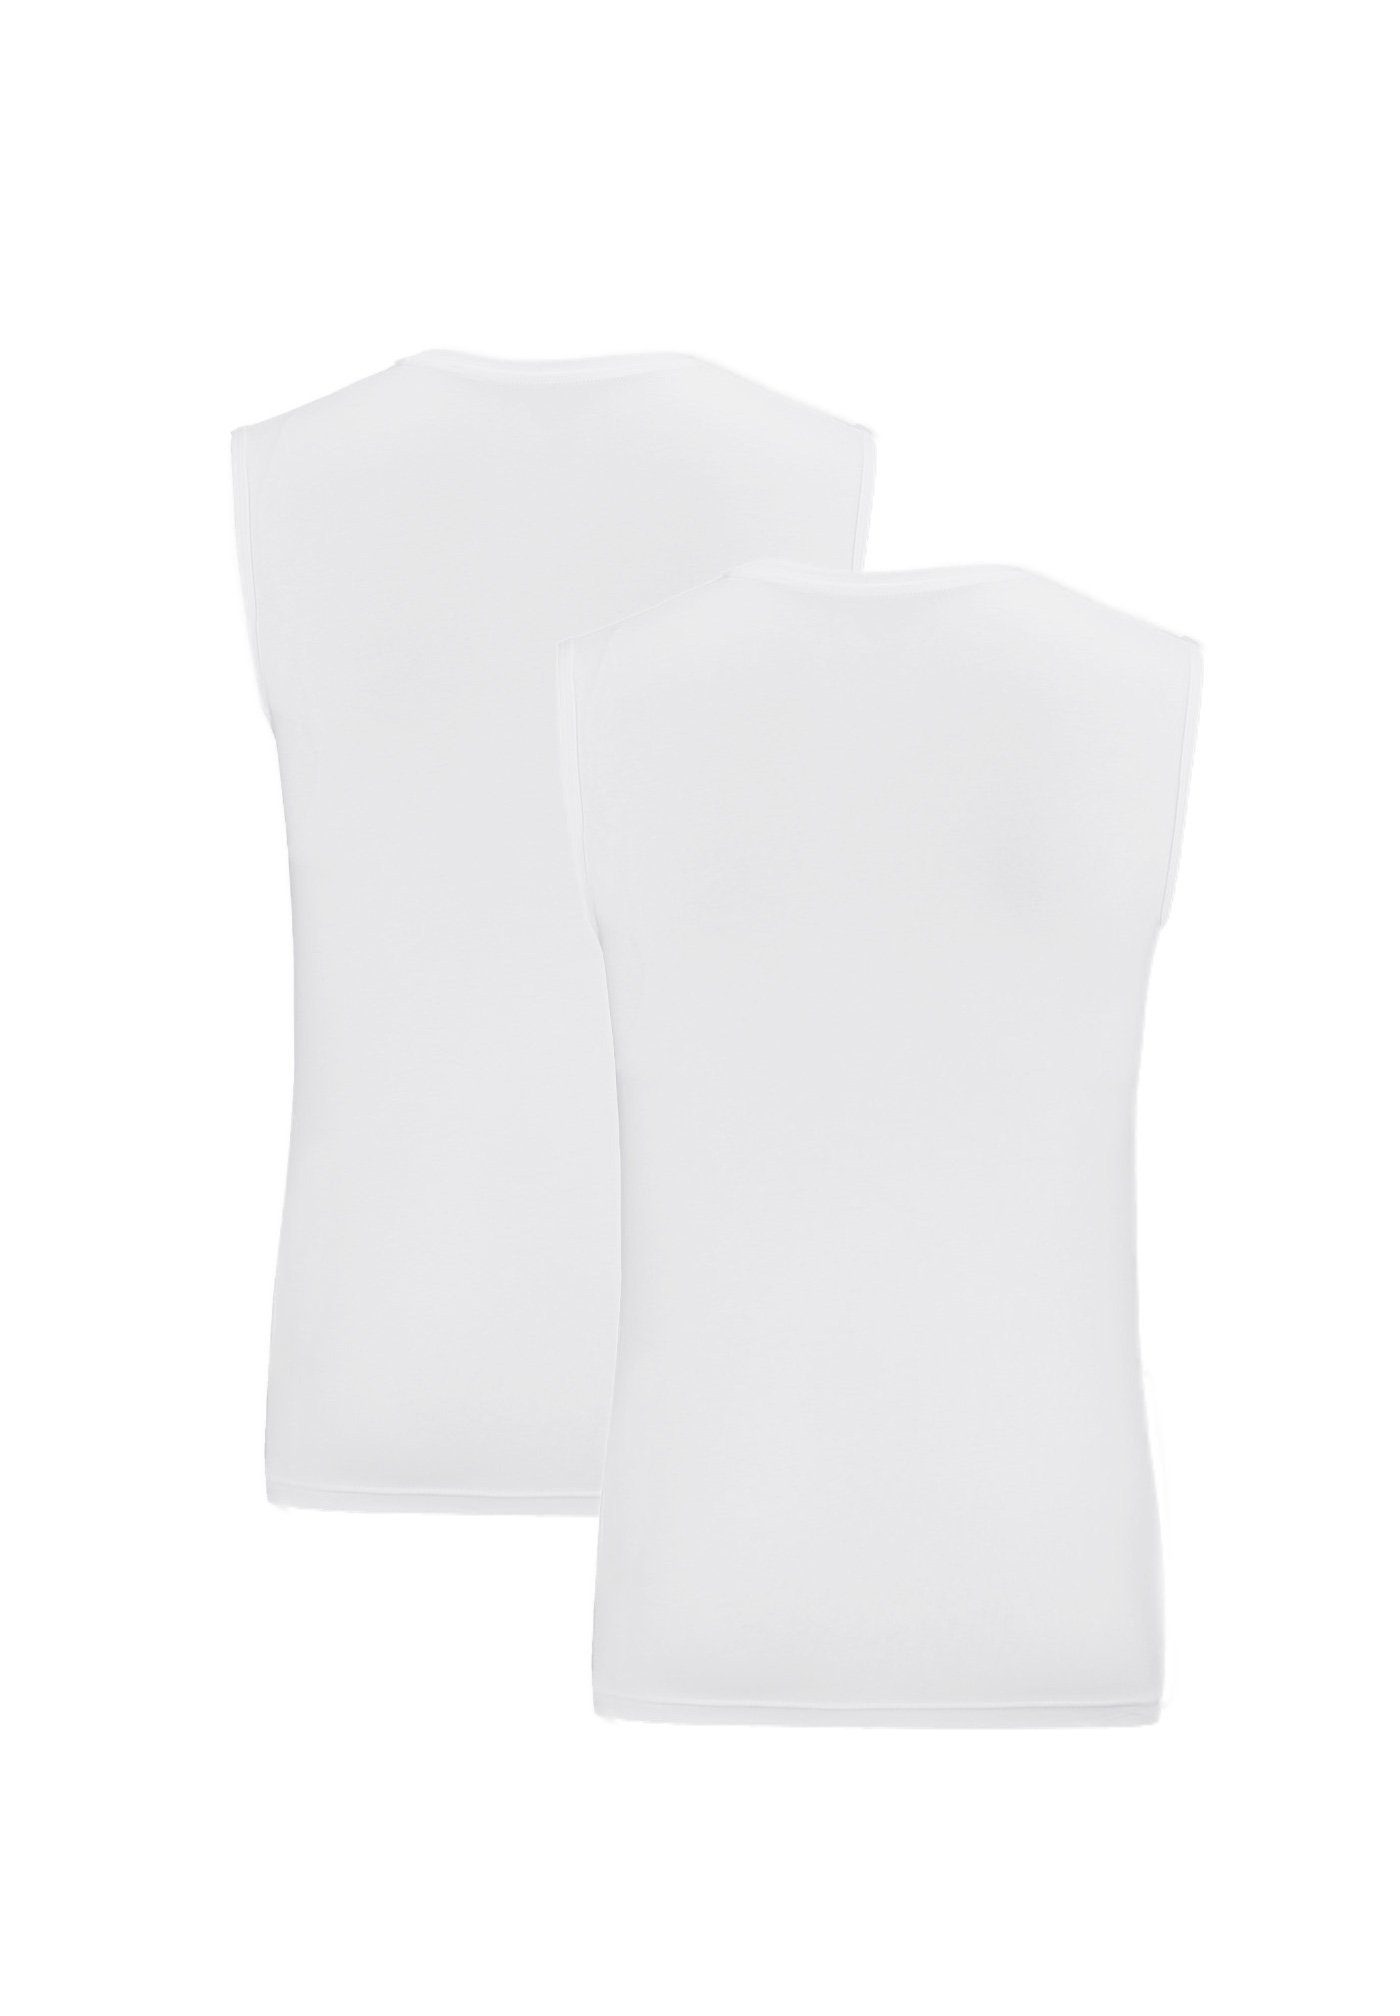 T-Shirt Ideal zum - MARVELIS Doppelpack - weiß Fit Tanktop/Rundhals- T-Shirt Unterziehen Body